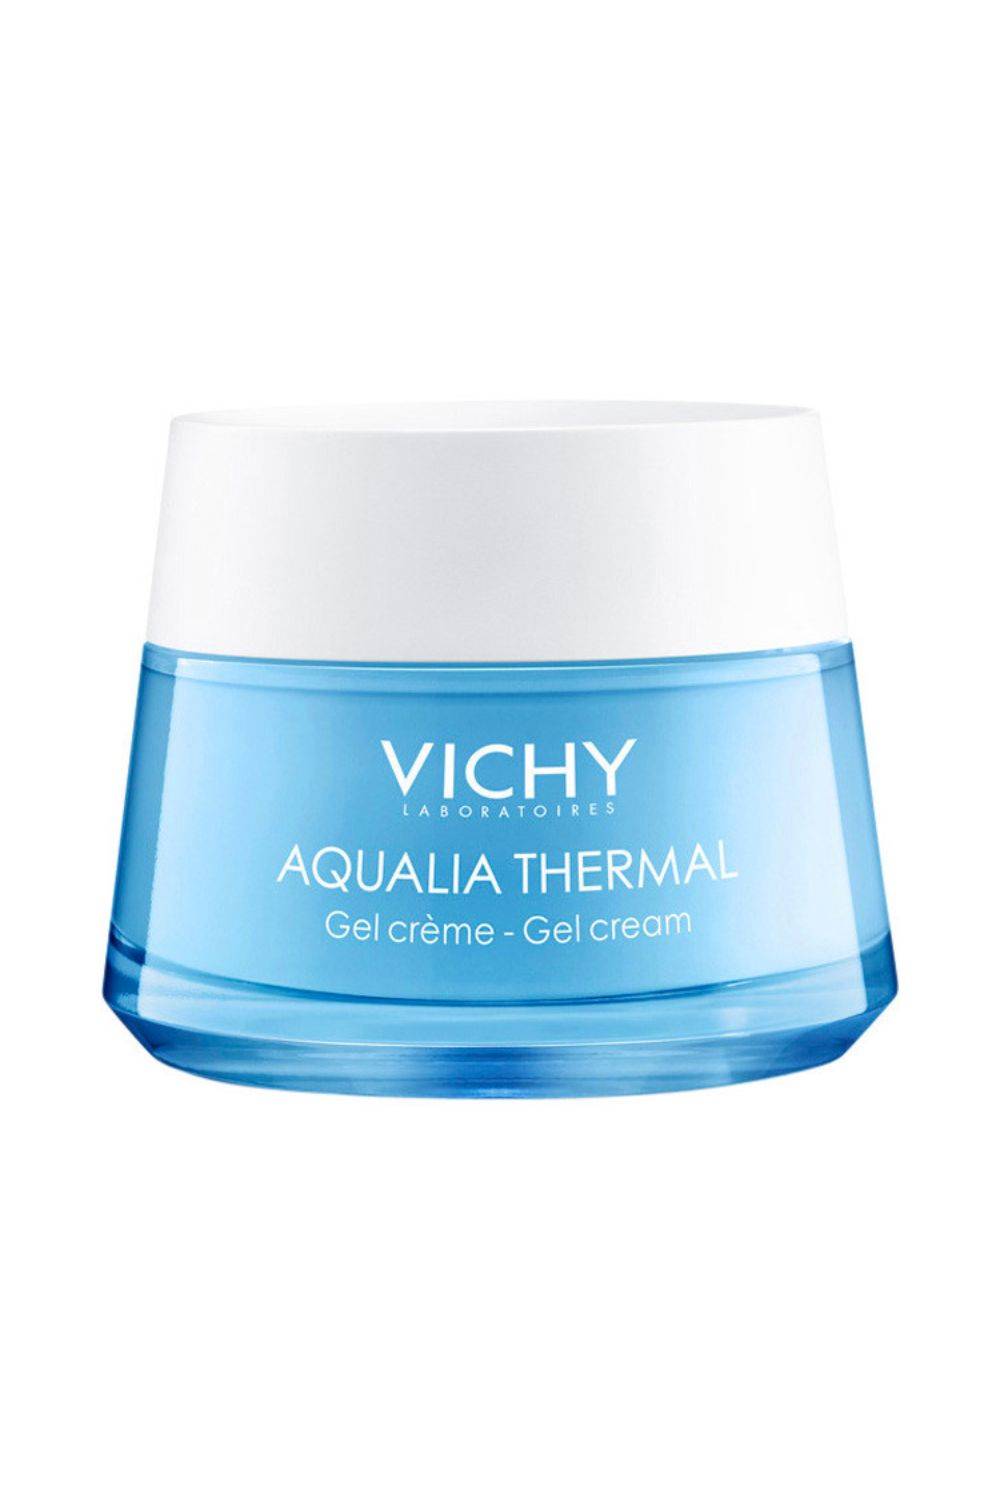 Vichy Aqualia Thermal Ligera 50 ml